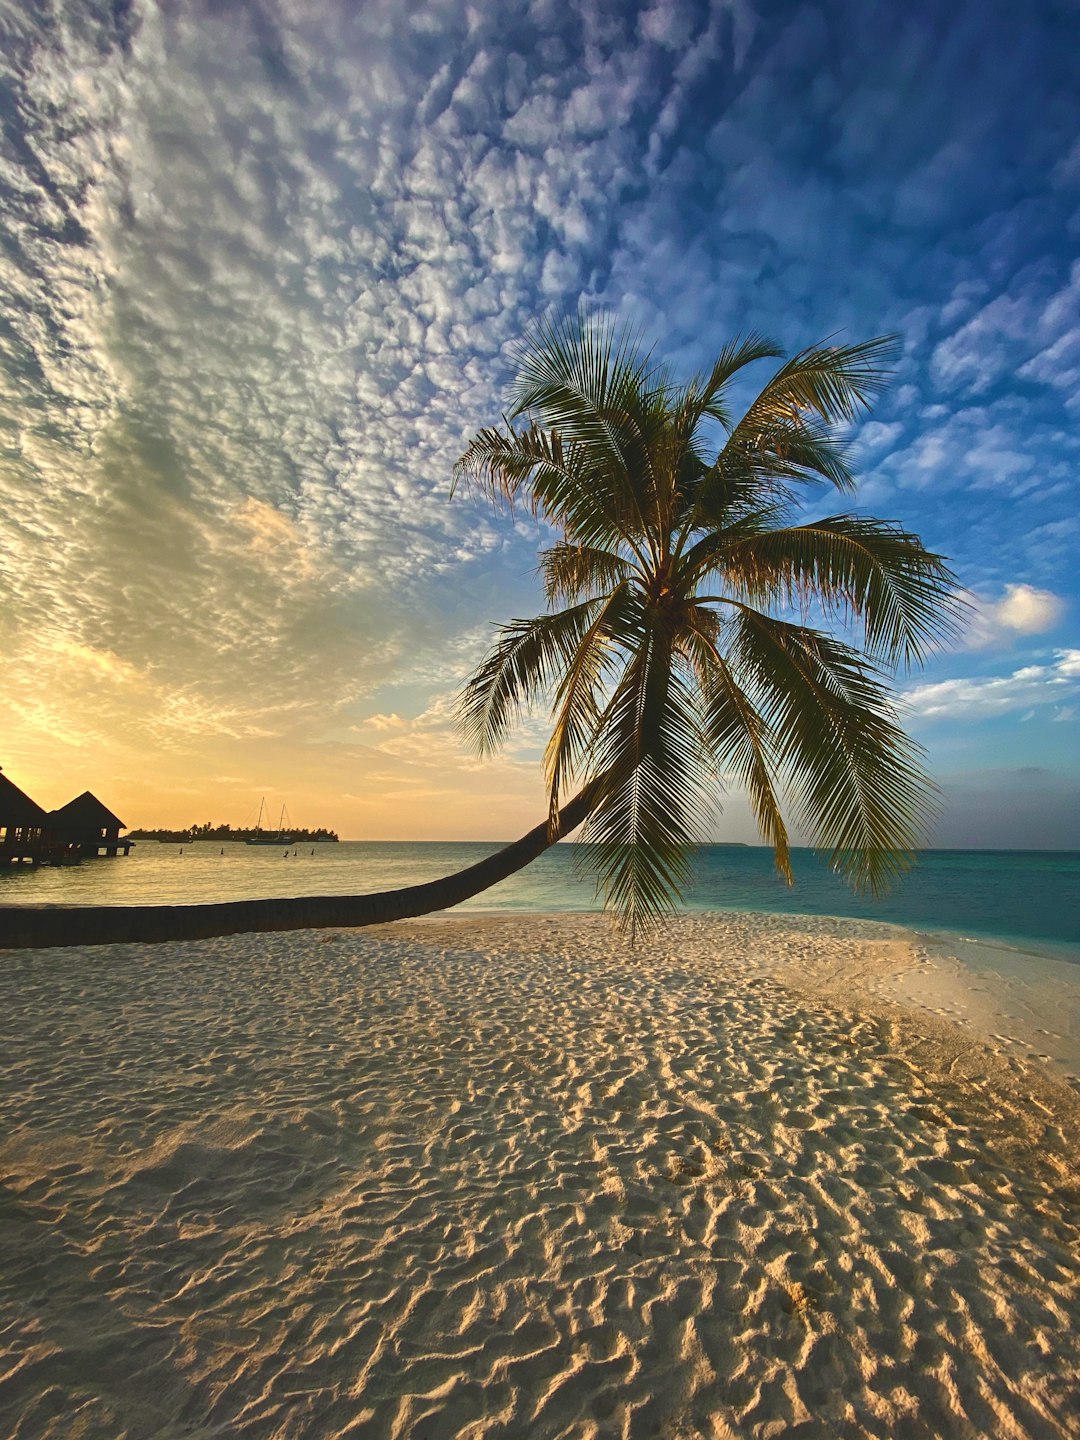 Beach photo spot Maldive Islands Thinadhoo